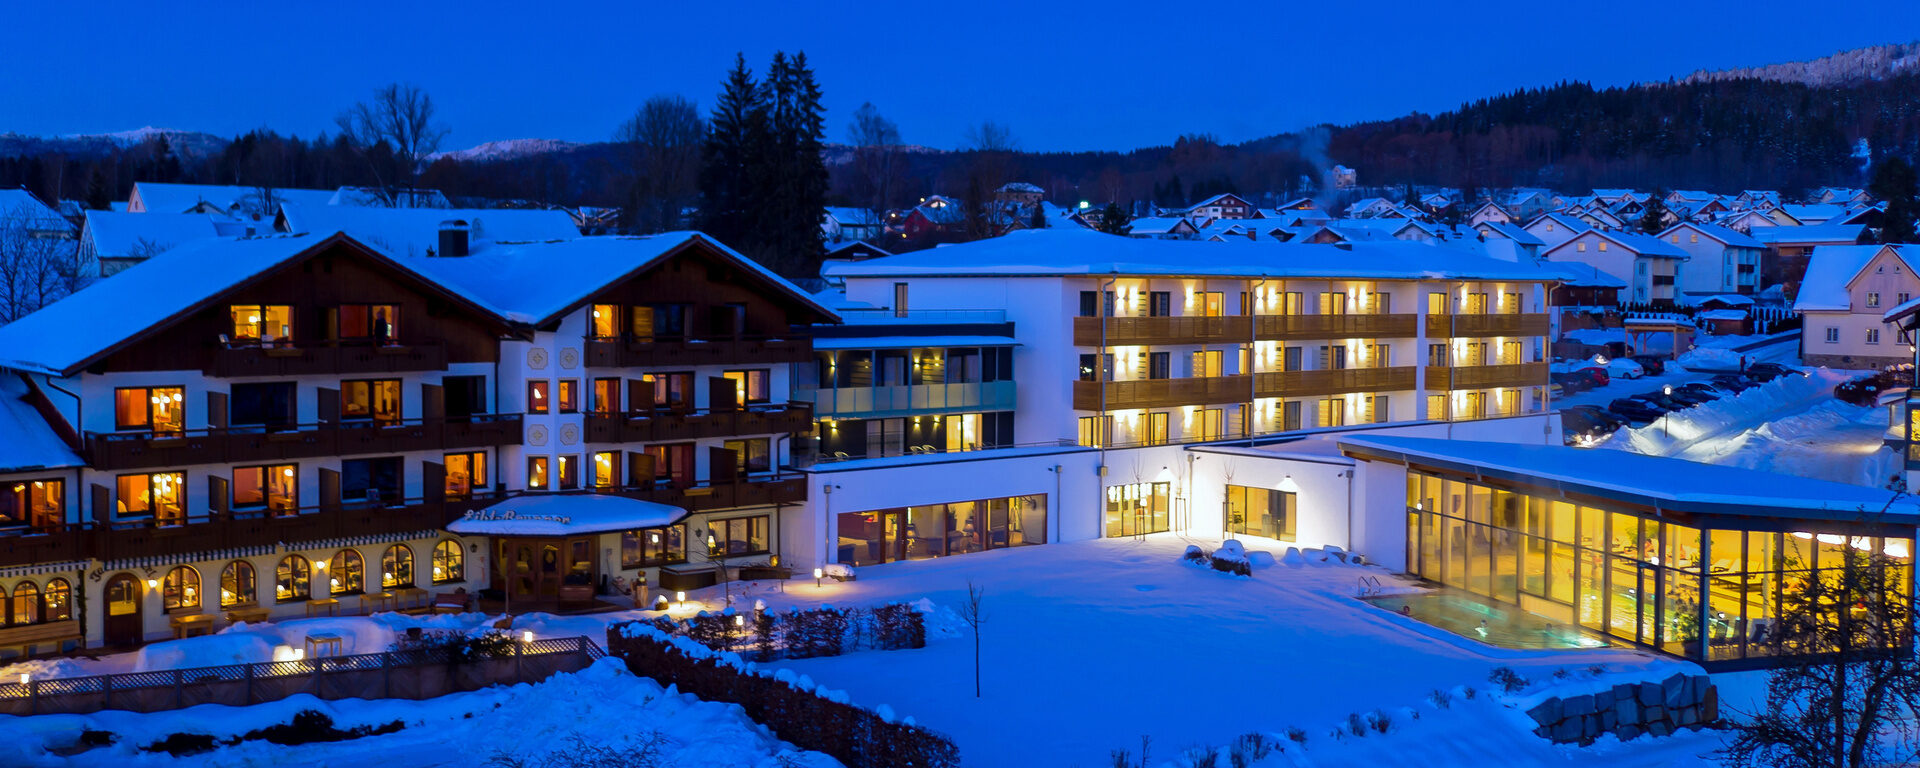 Das winterlich eingeschneite Hotel Eibl-Brunner in Frauenau. Alle Fenster sind beleuchtet und die Umgebung ist ebenfalls mit Schnee bedeckt.